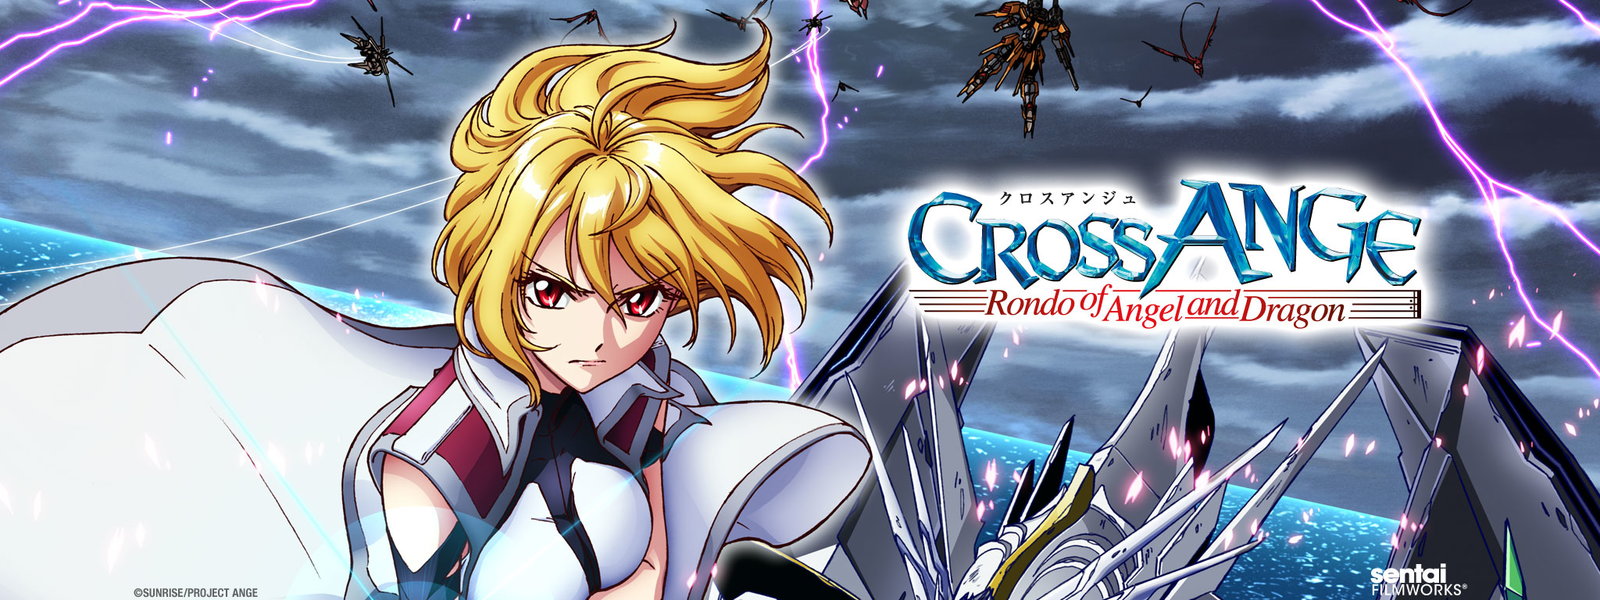 CROSS ANGE Rondo of Angel and Dragon (TV) - Anime News Network